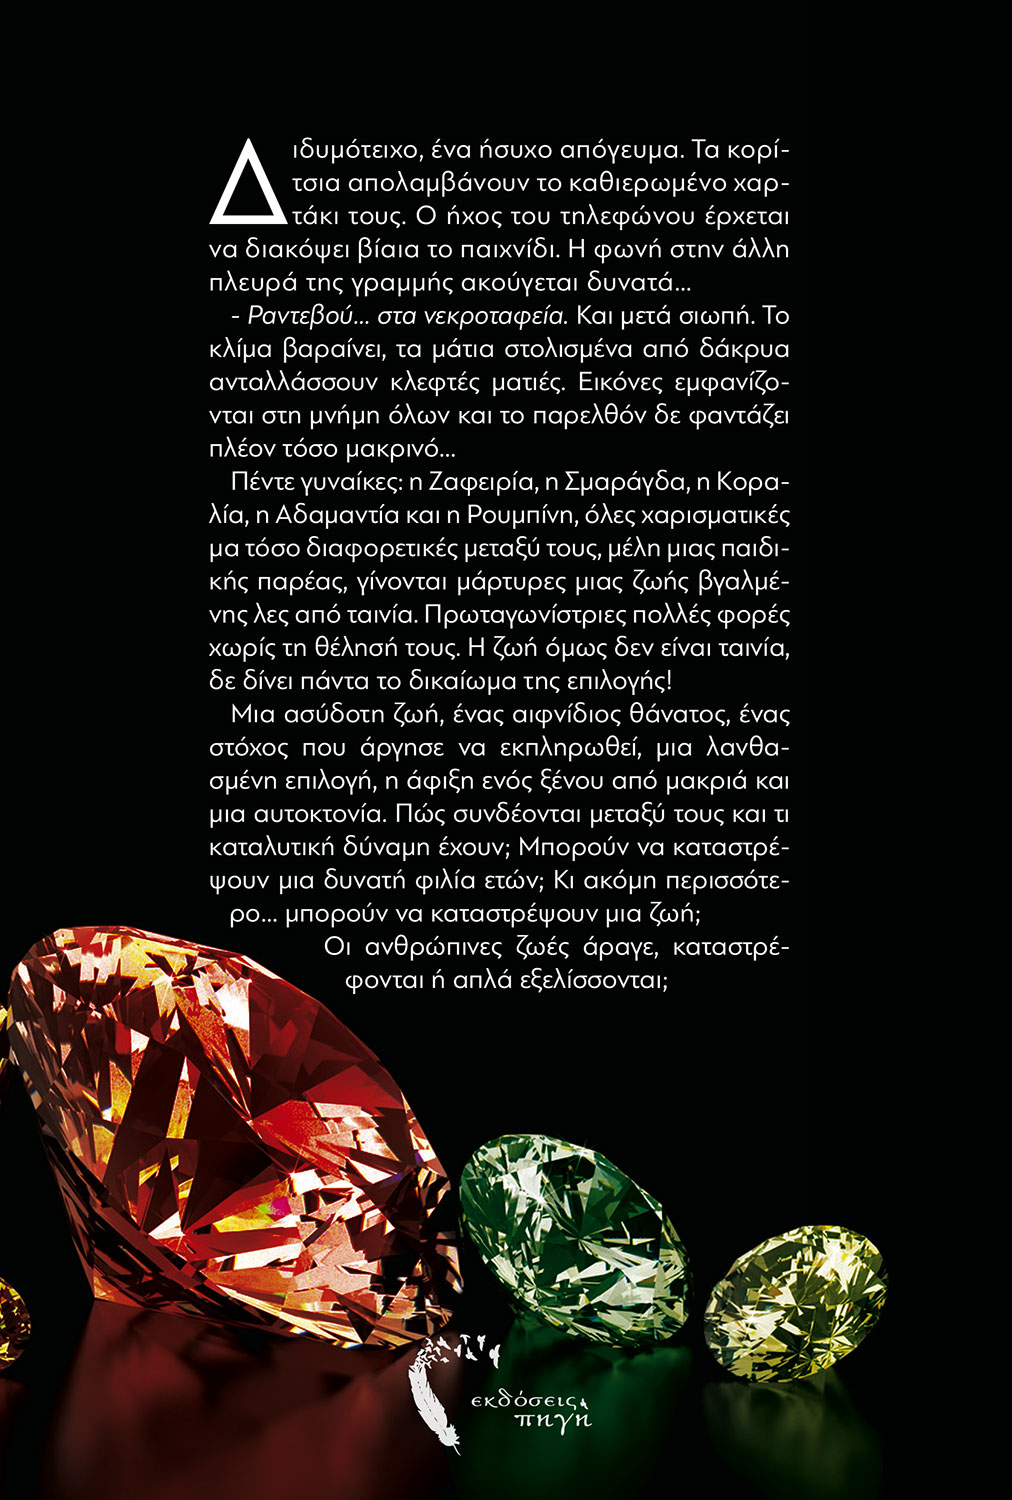 Μια χούφτα πετράδια, Σταυρούλα Δεληντζόγλου, Εκδόσεις Πηγή - www.pigi.gr